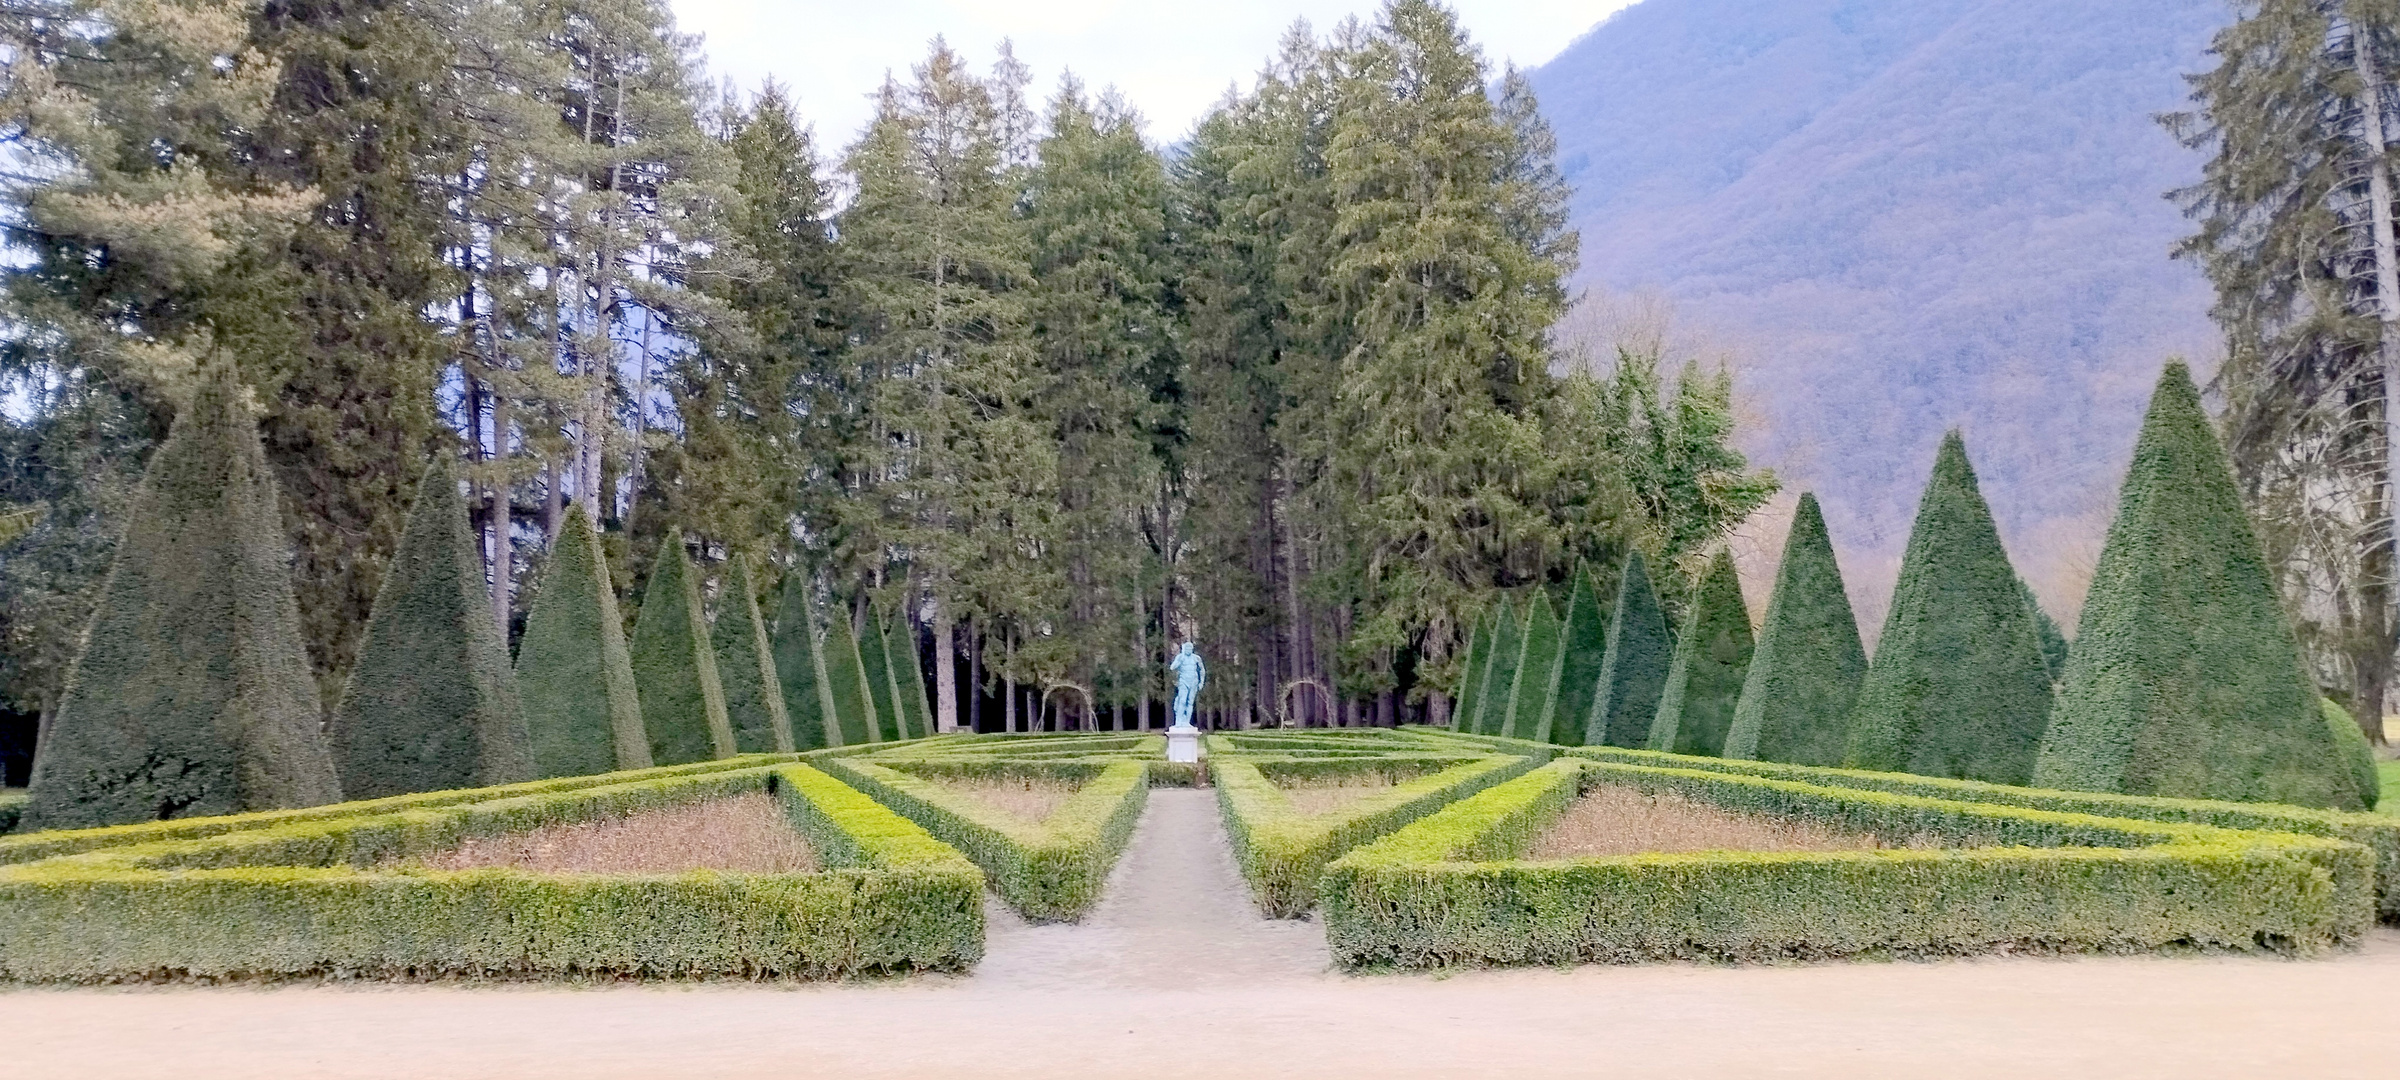 Jardins à la Française, Vizille, Isère